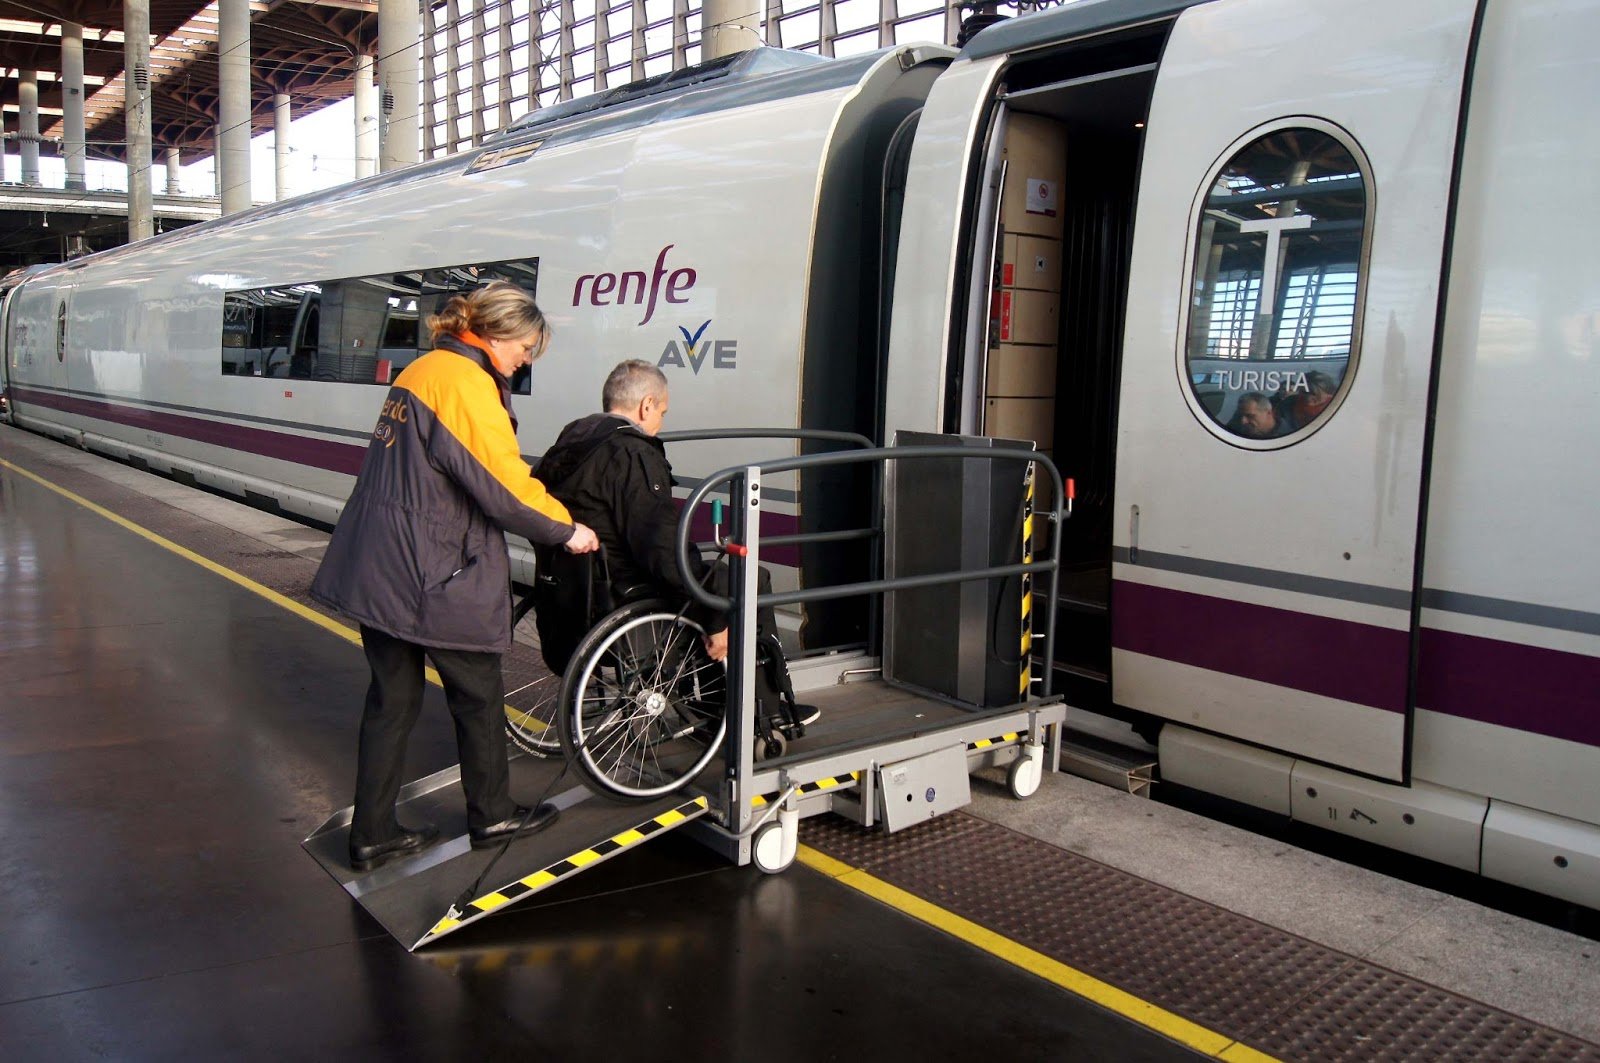 Транспортная доступность для инвалидов. Транспорт для инвалидов. Вагон для инвалидов. Вагон для маломобильных пассажиров. Транспорт для маломобильных людей.